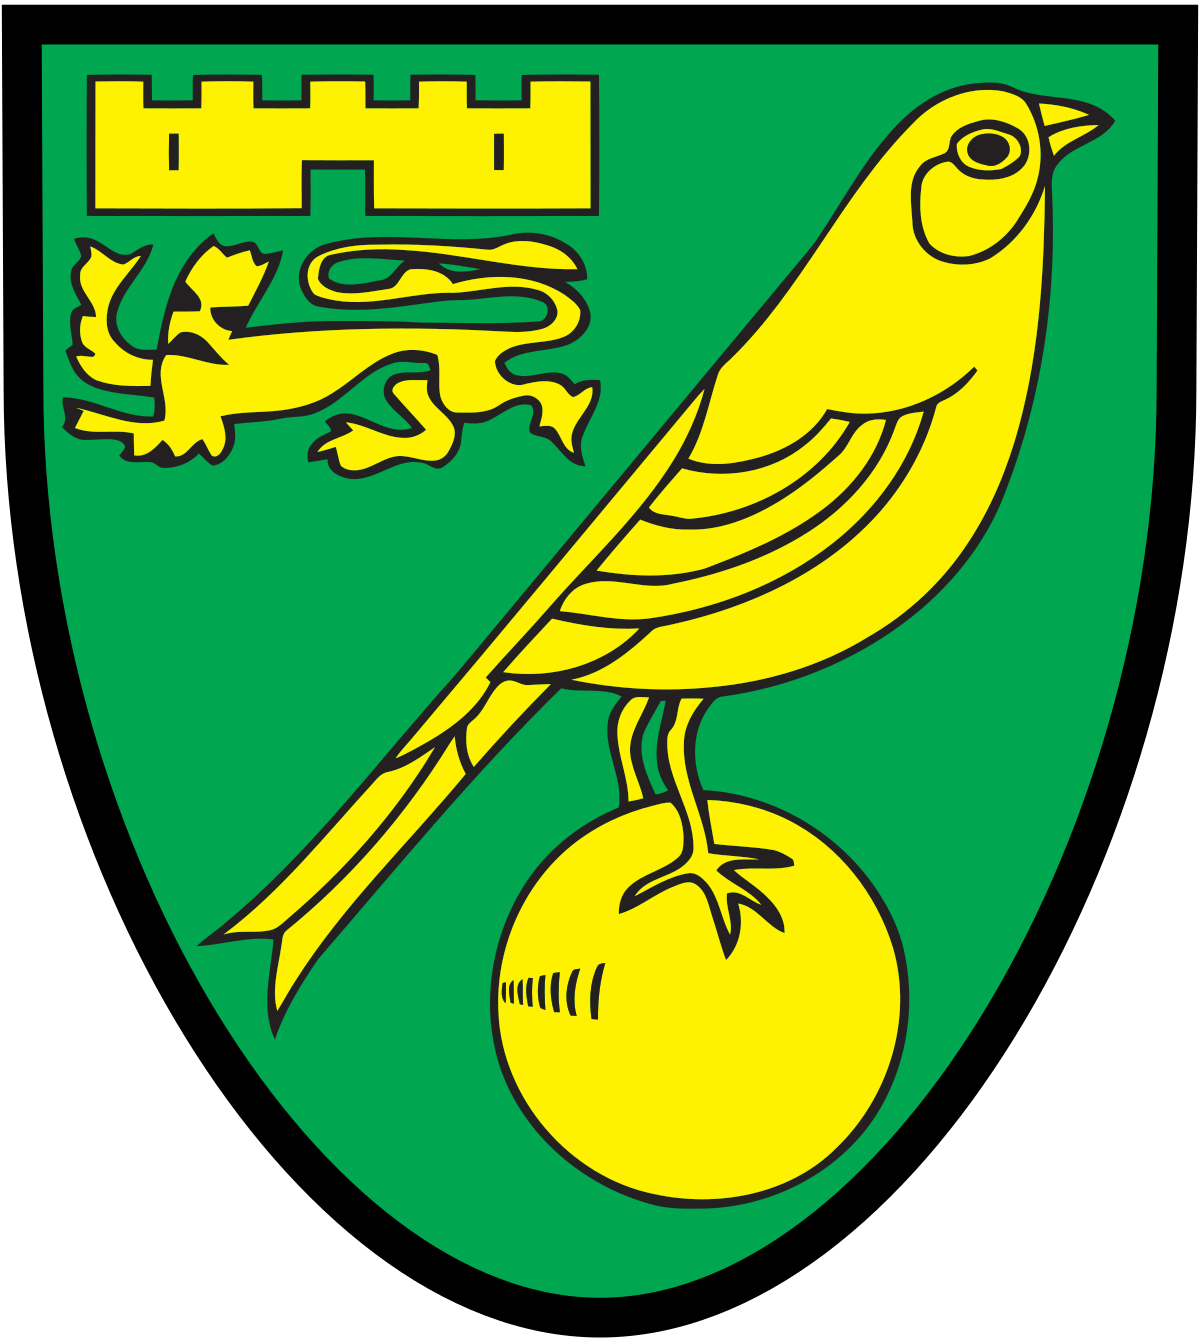 Norwich city Football club logo